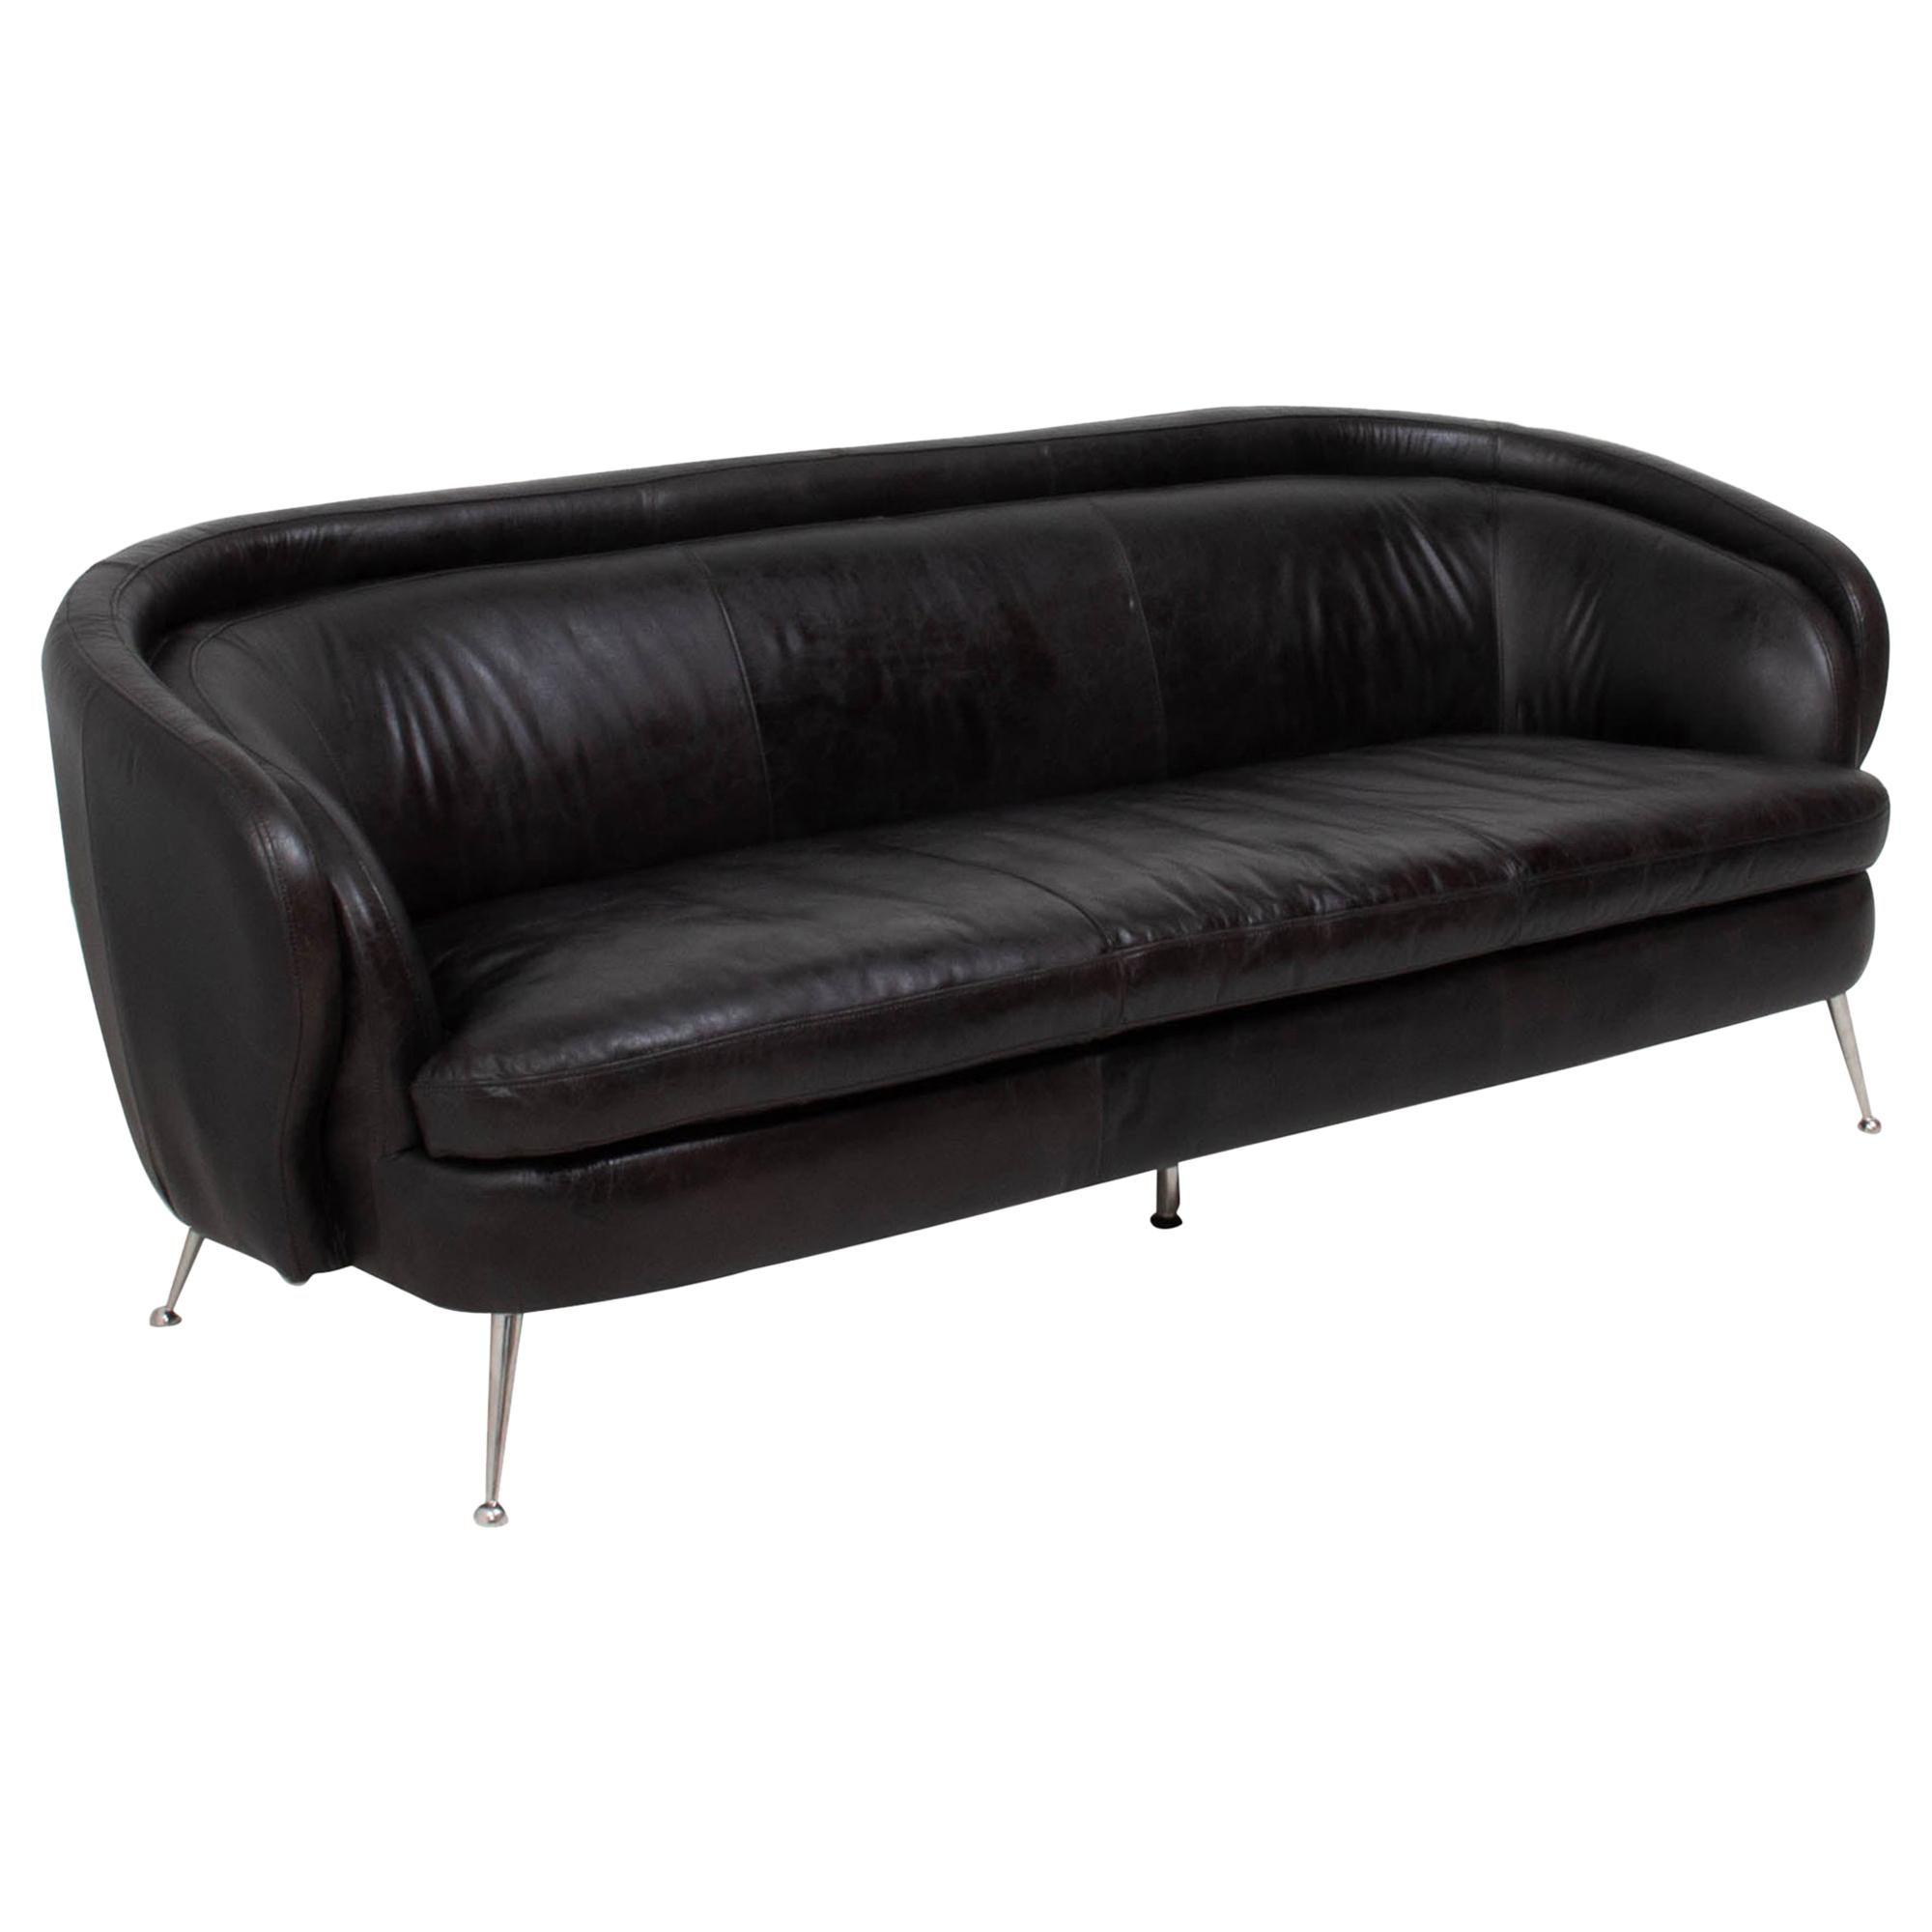 Vintage Italian Style Black Three Seater Leather Sofa, 1960s